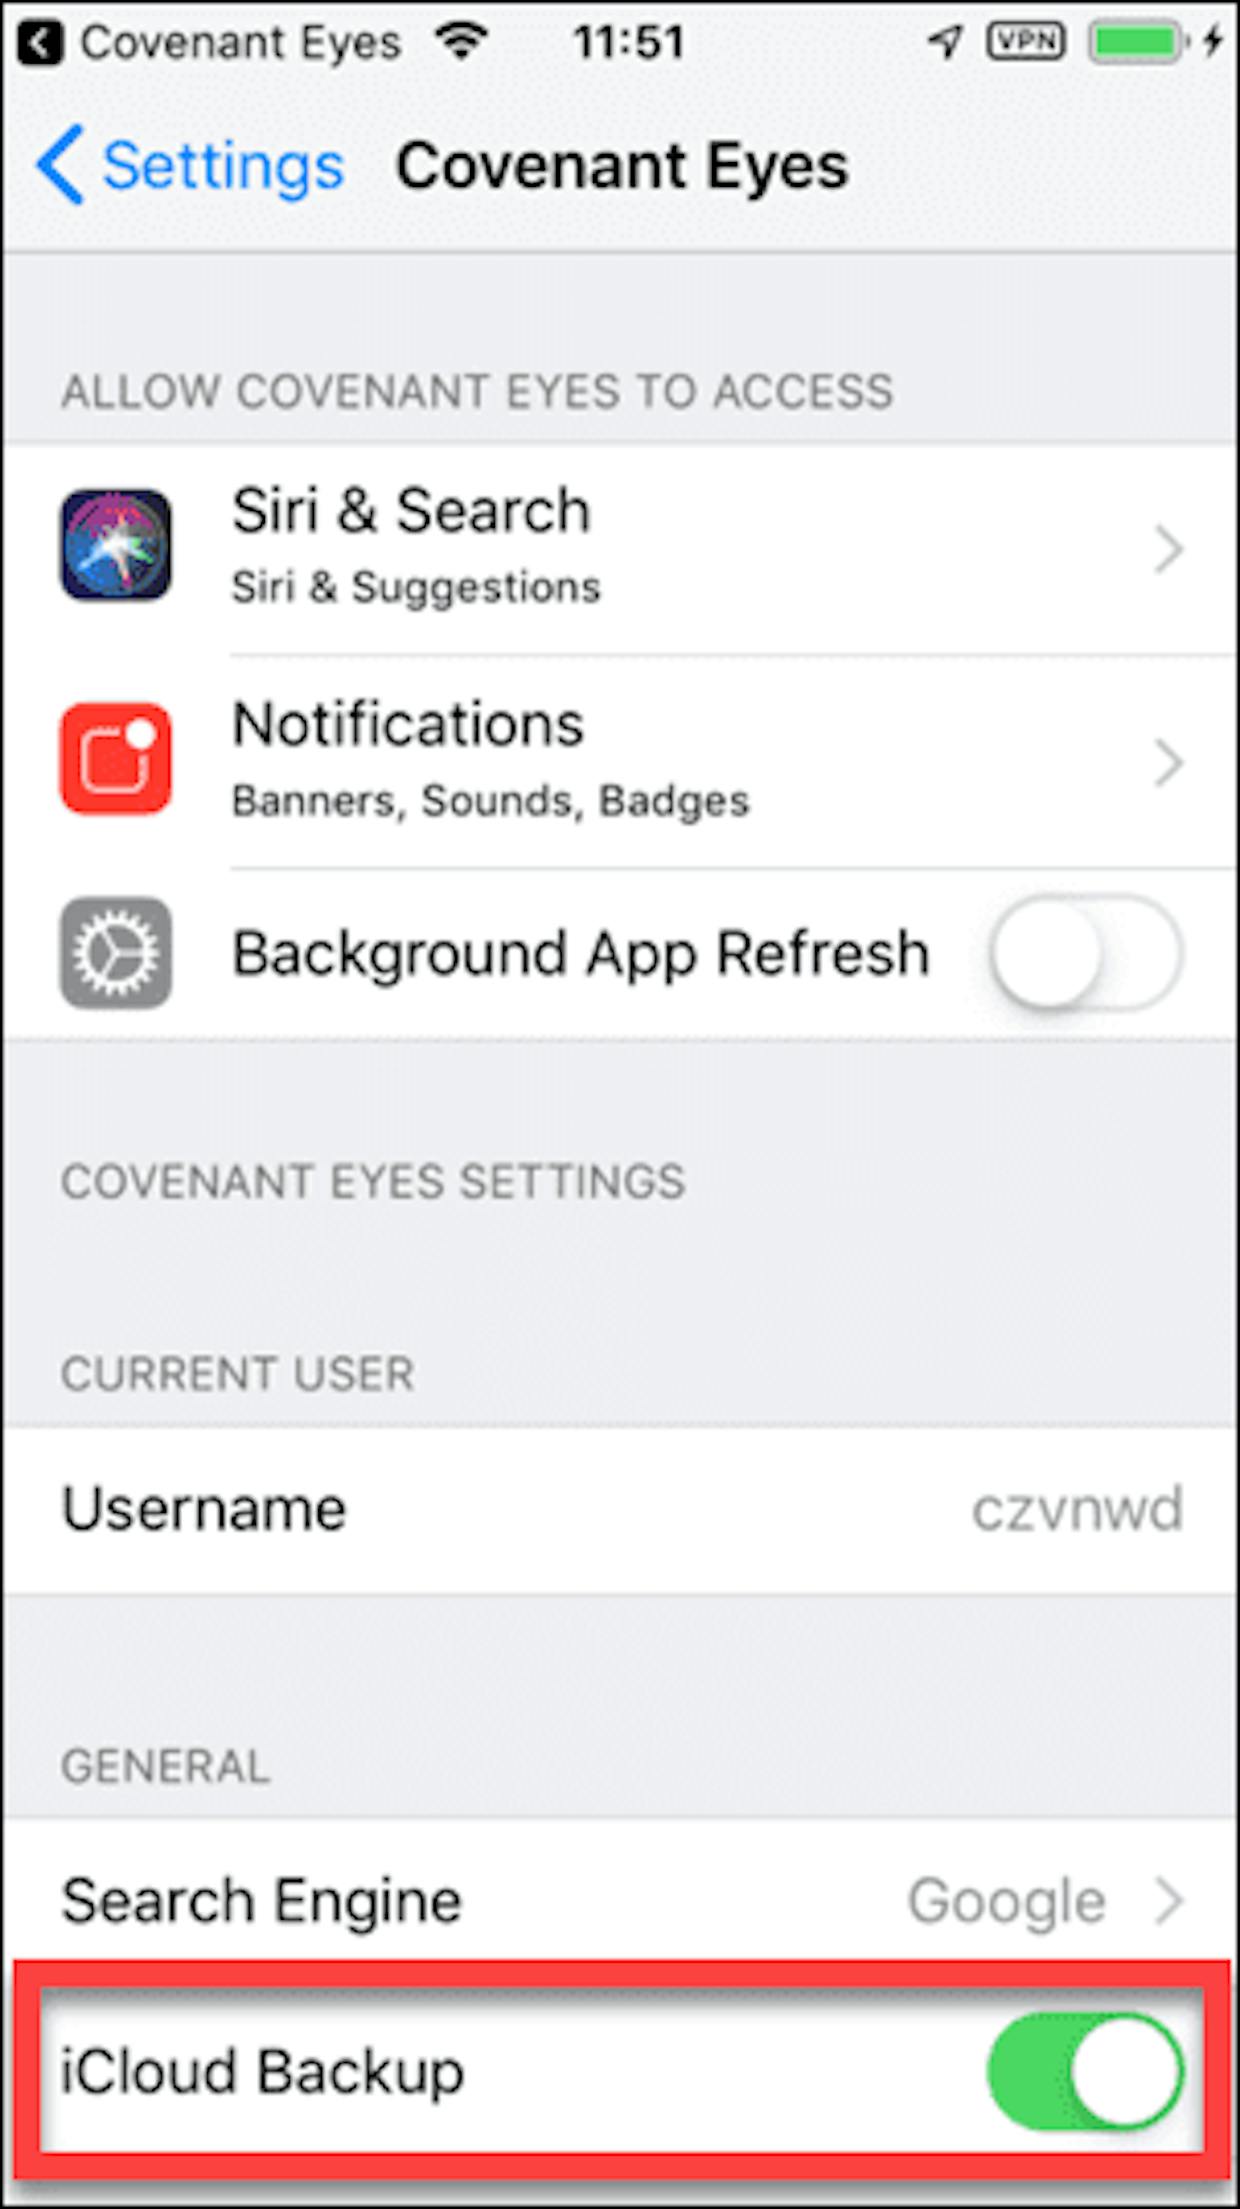 Settings app > Covenant Eyes > iCloud Backup